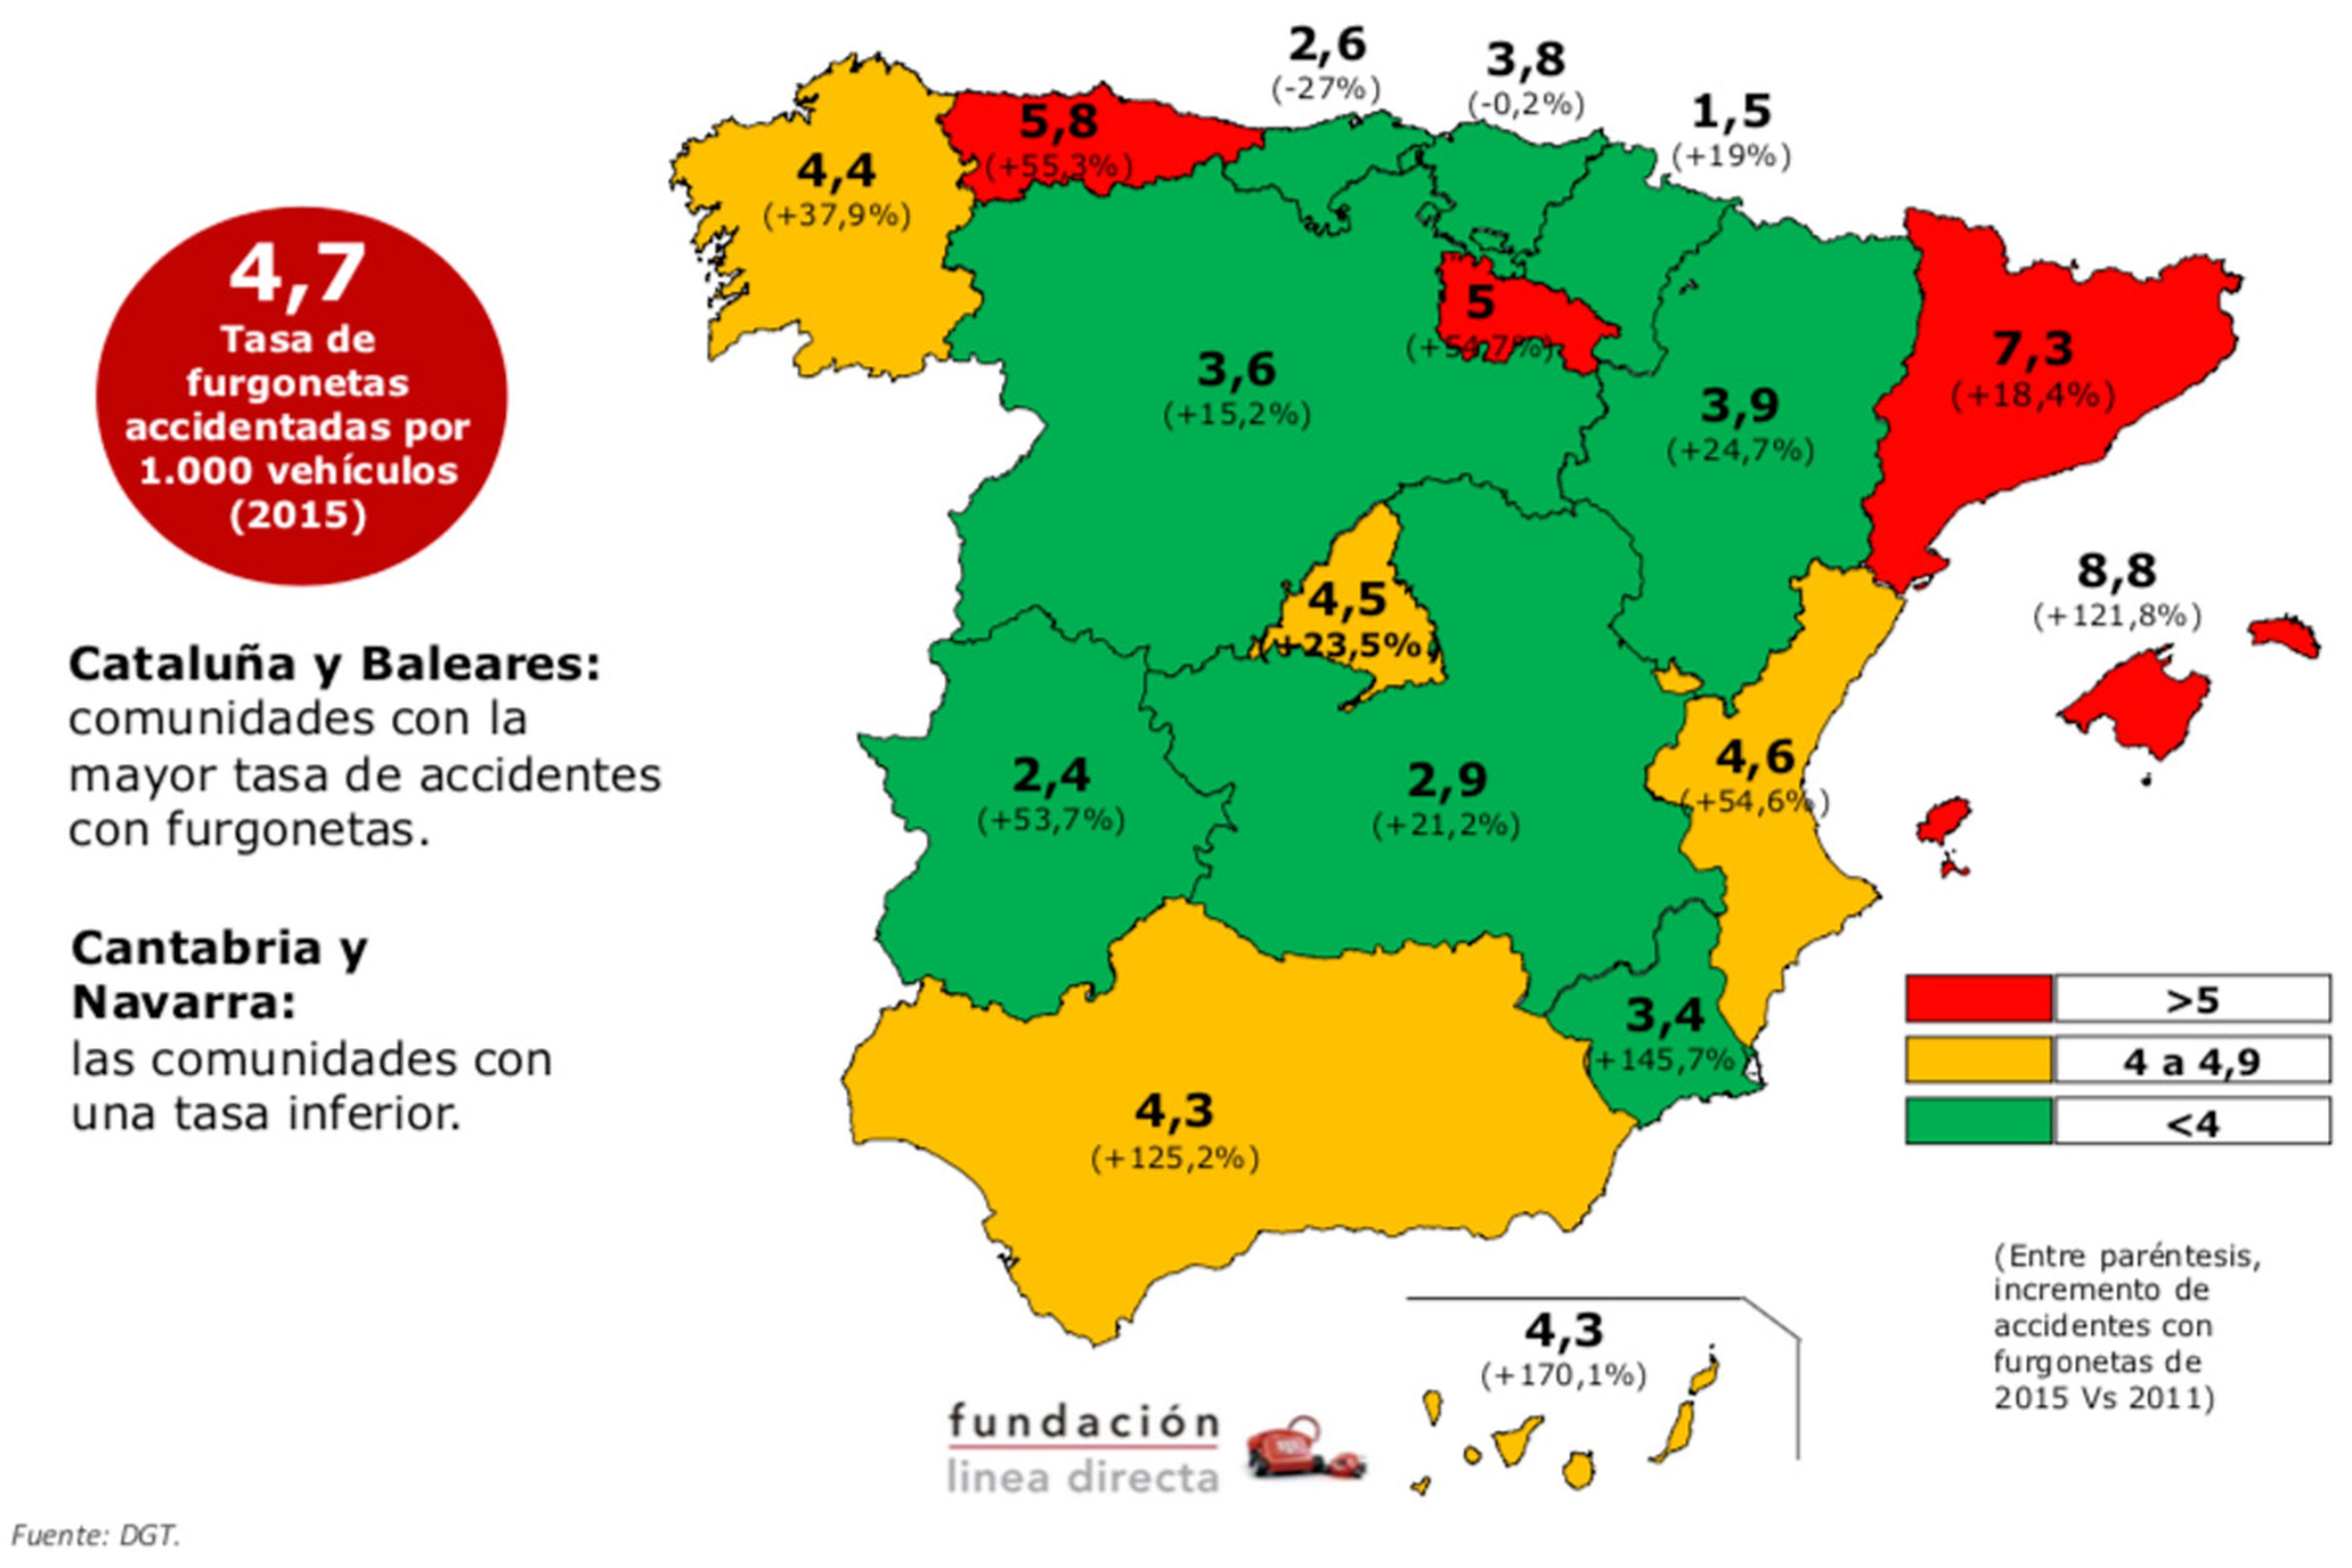 Las comunidades donde conducir una furgoneta es más peligroso son Baleares y Canarias.